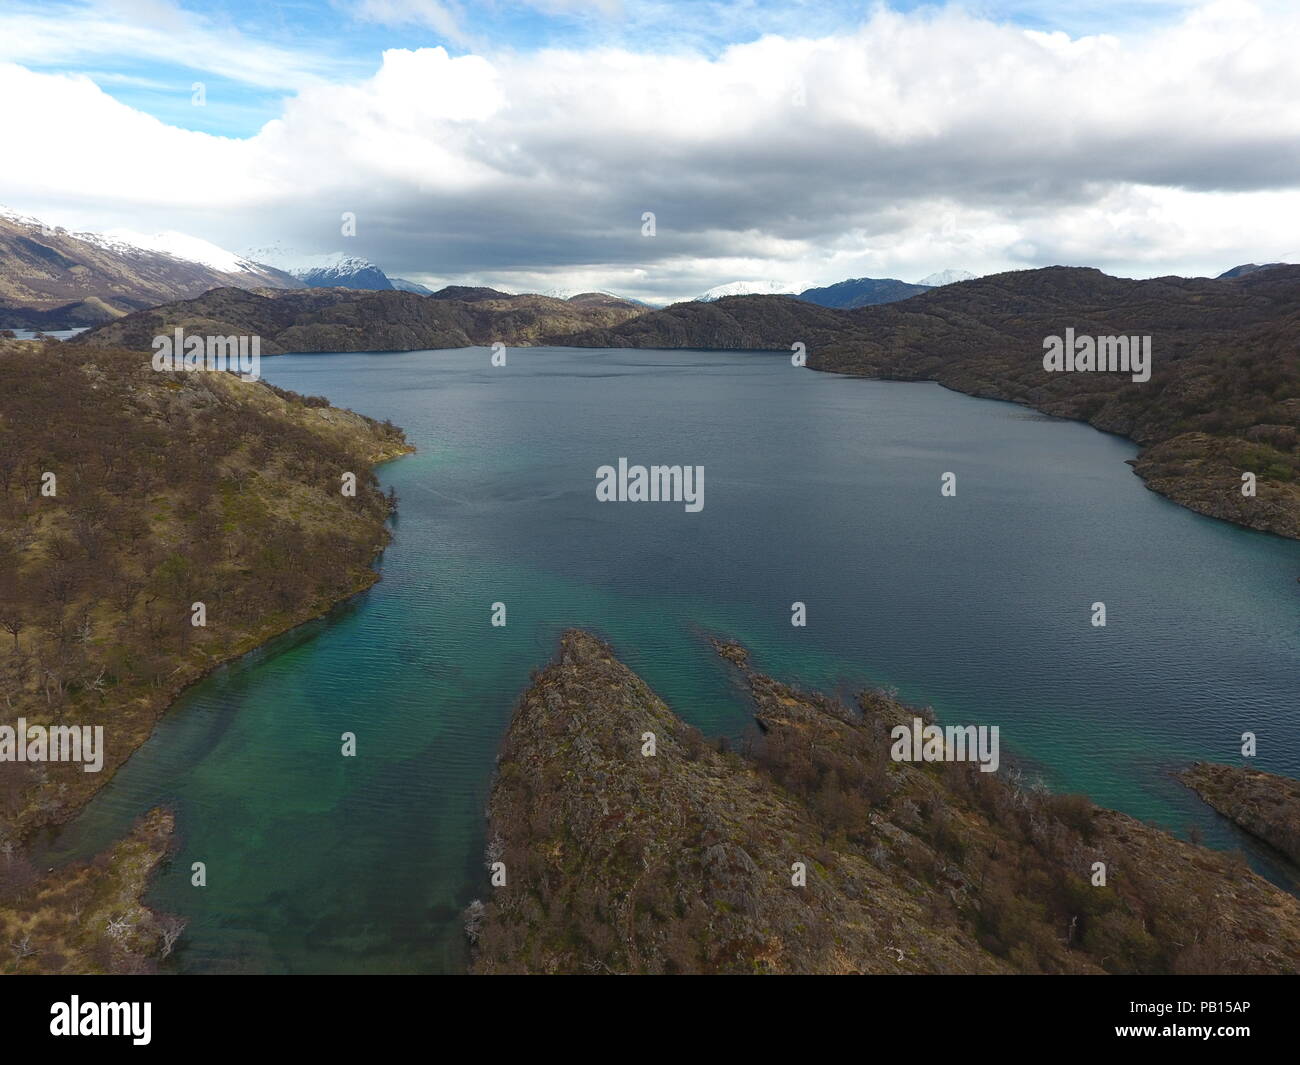 Lago en Villa Ohiggins, Carretera Austral, Patagonia, Chile Stock Photo